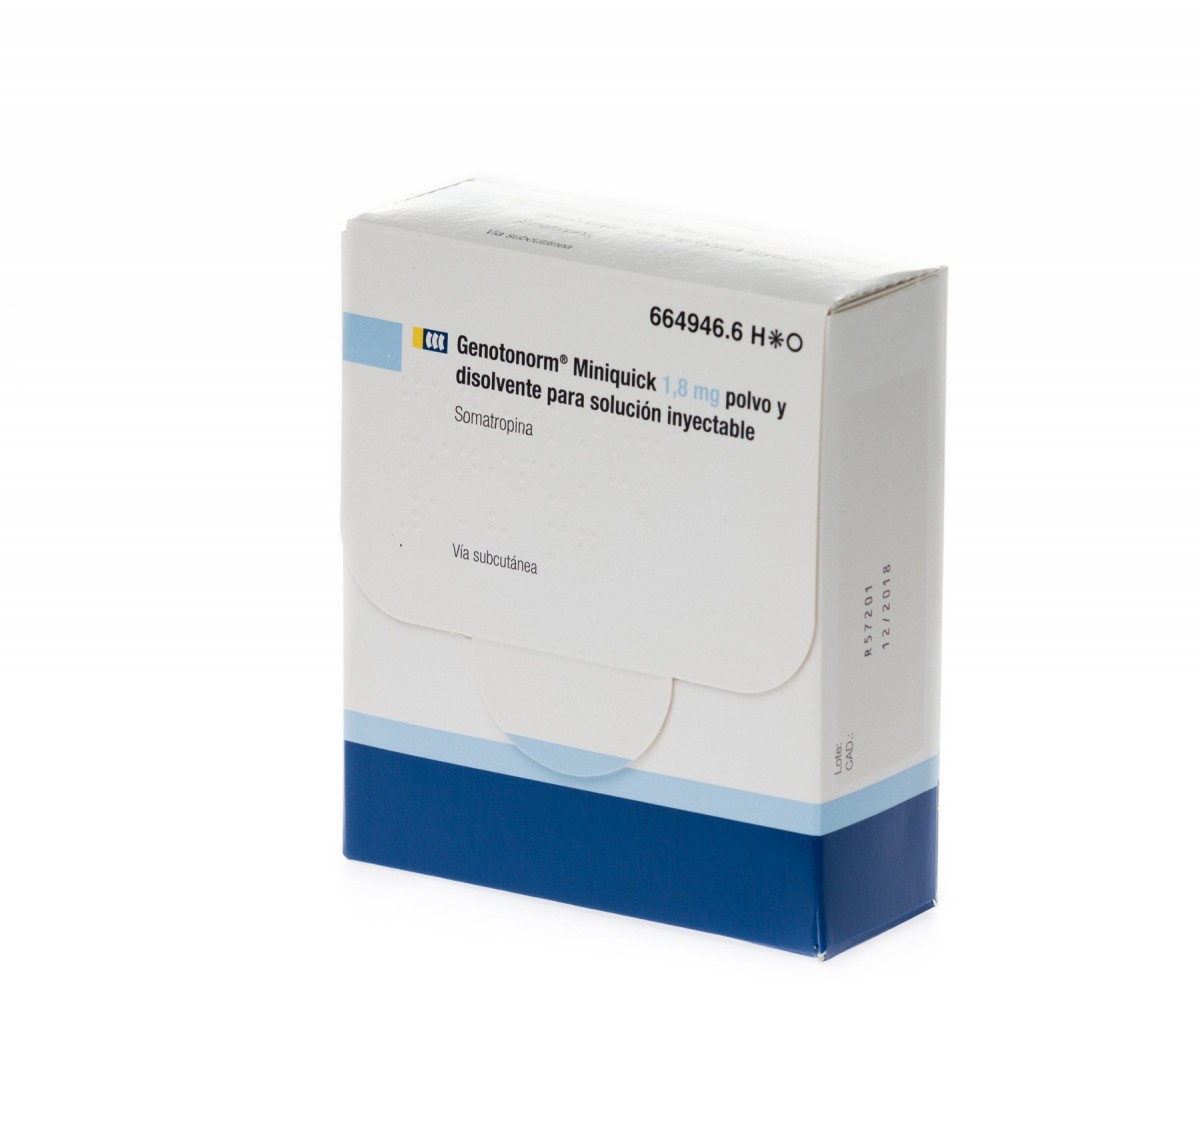 GENOTONORM MINIQUICK 1,8 mg  POLVO Y DISOLVENTE PARA SOLUCION INYECTABLE , 7 viales de doble cámara fotografía del envase.